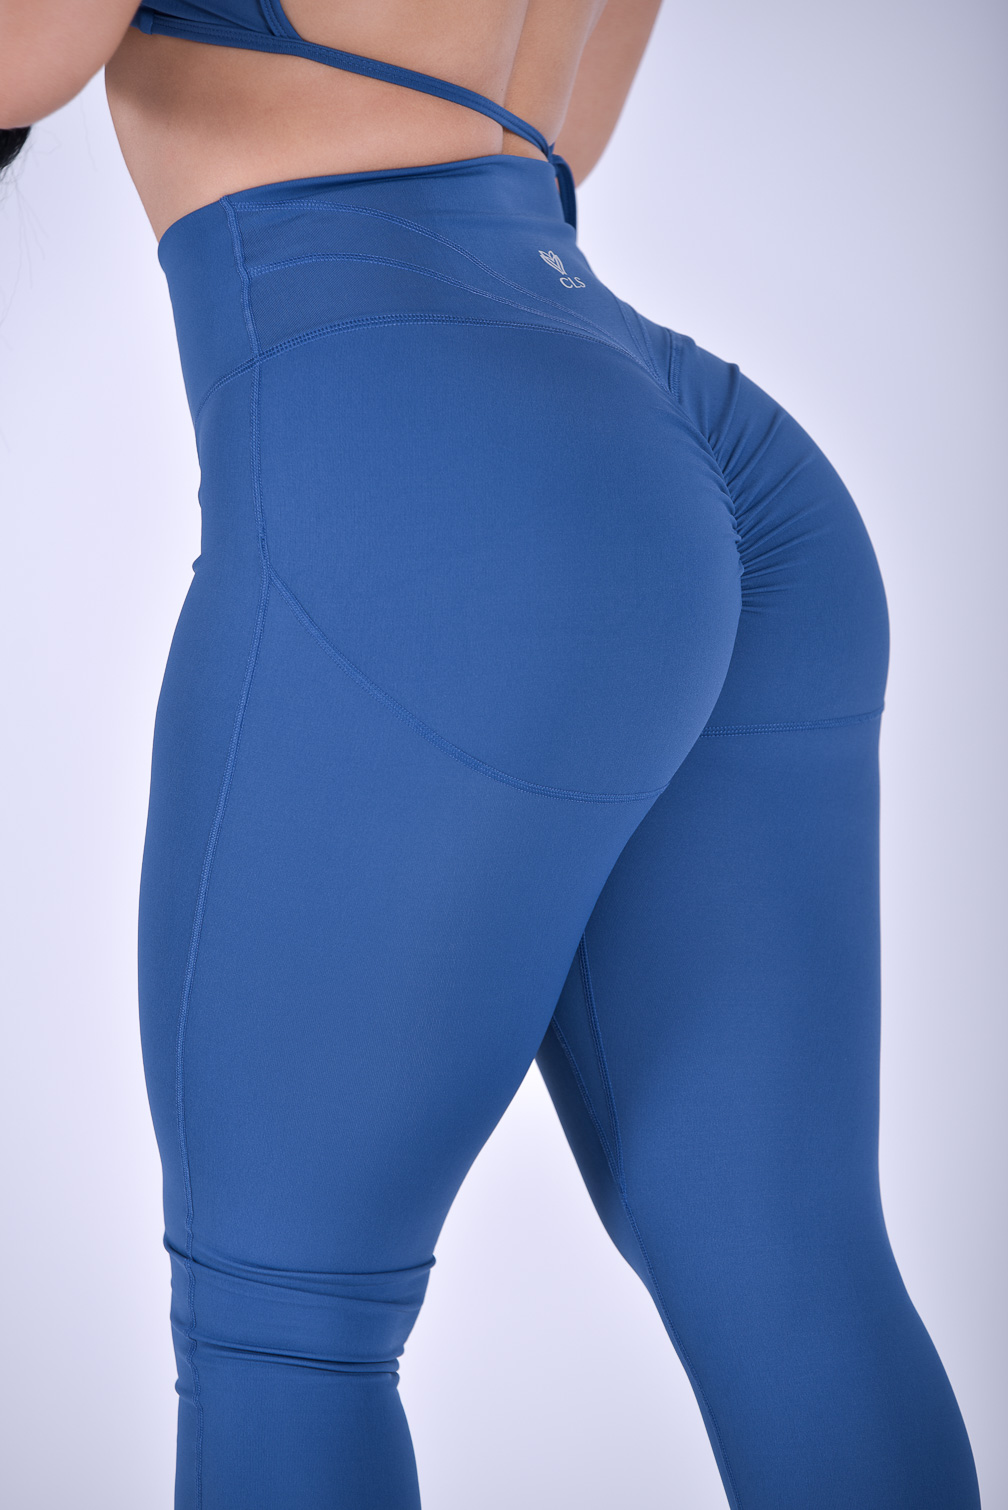 CLS Sportswear review & try on • booty scrunch leggings 